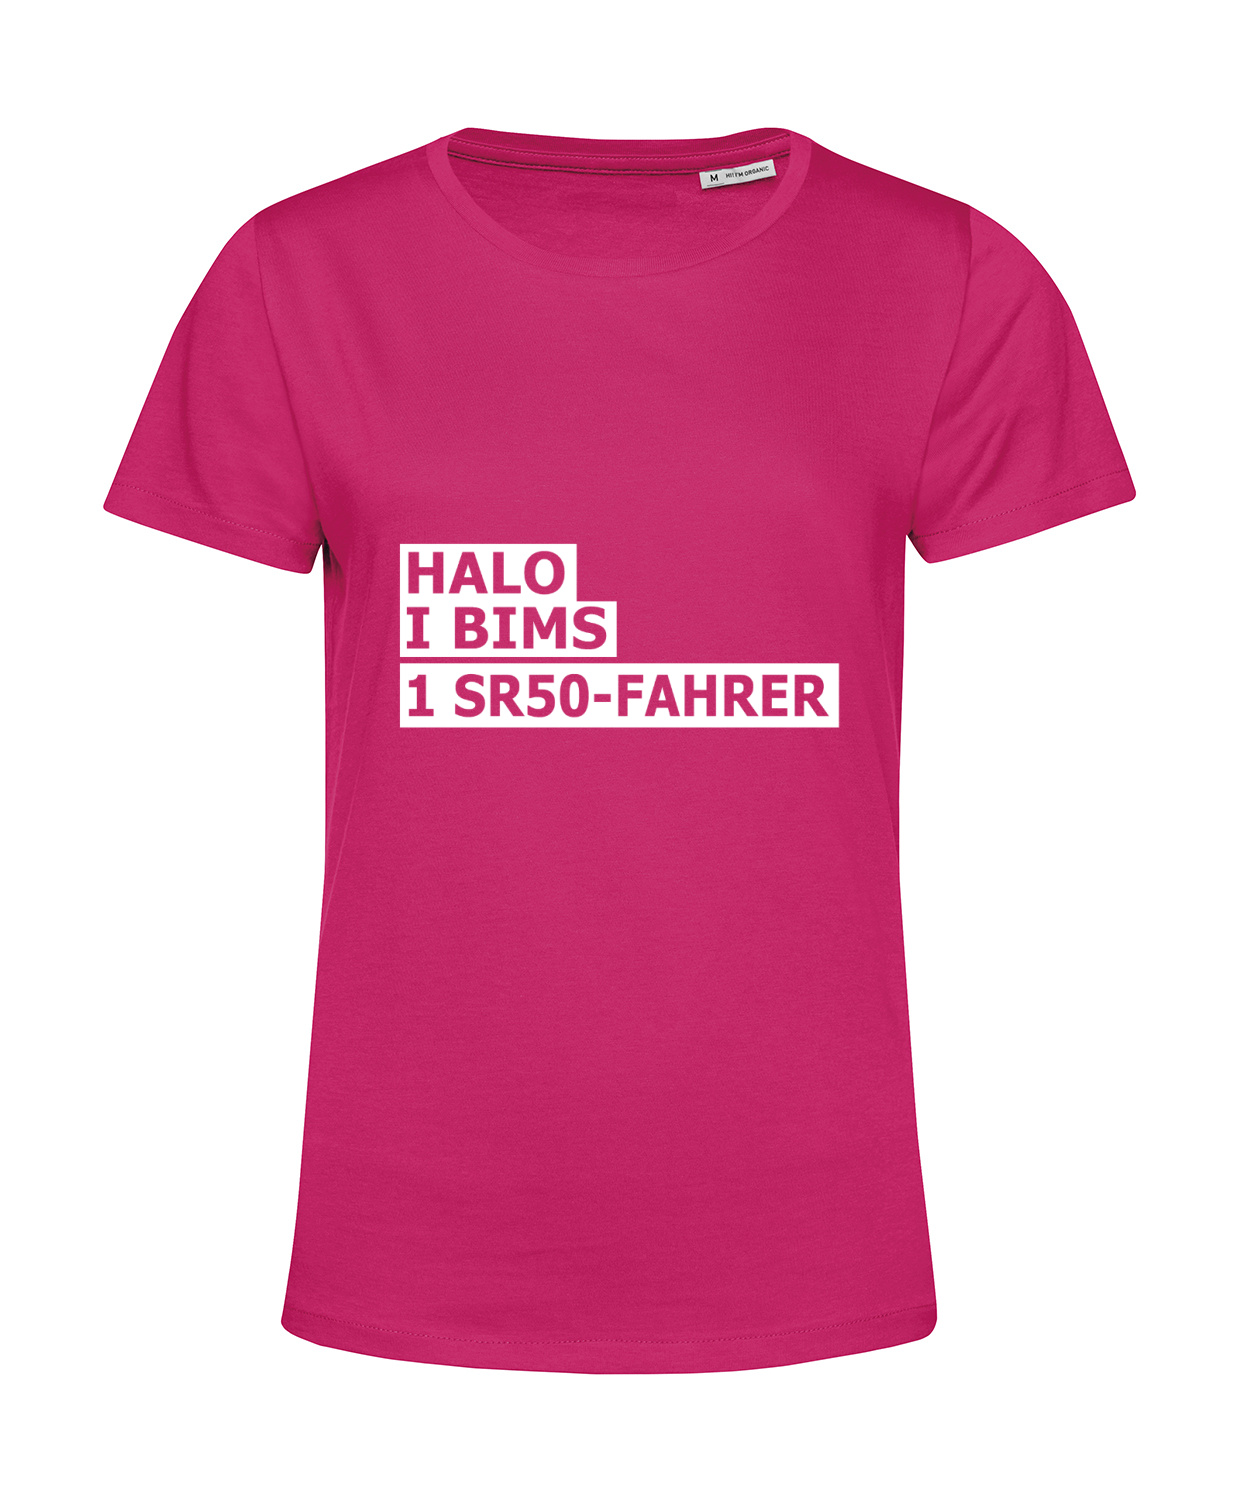 Nachhaltiges T-Shirt Damen 2Takter - Halo I bims 1 SR50-Fahrer